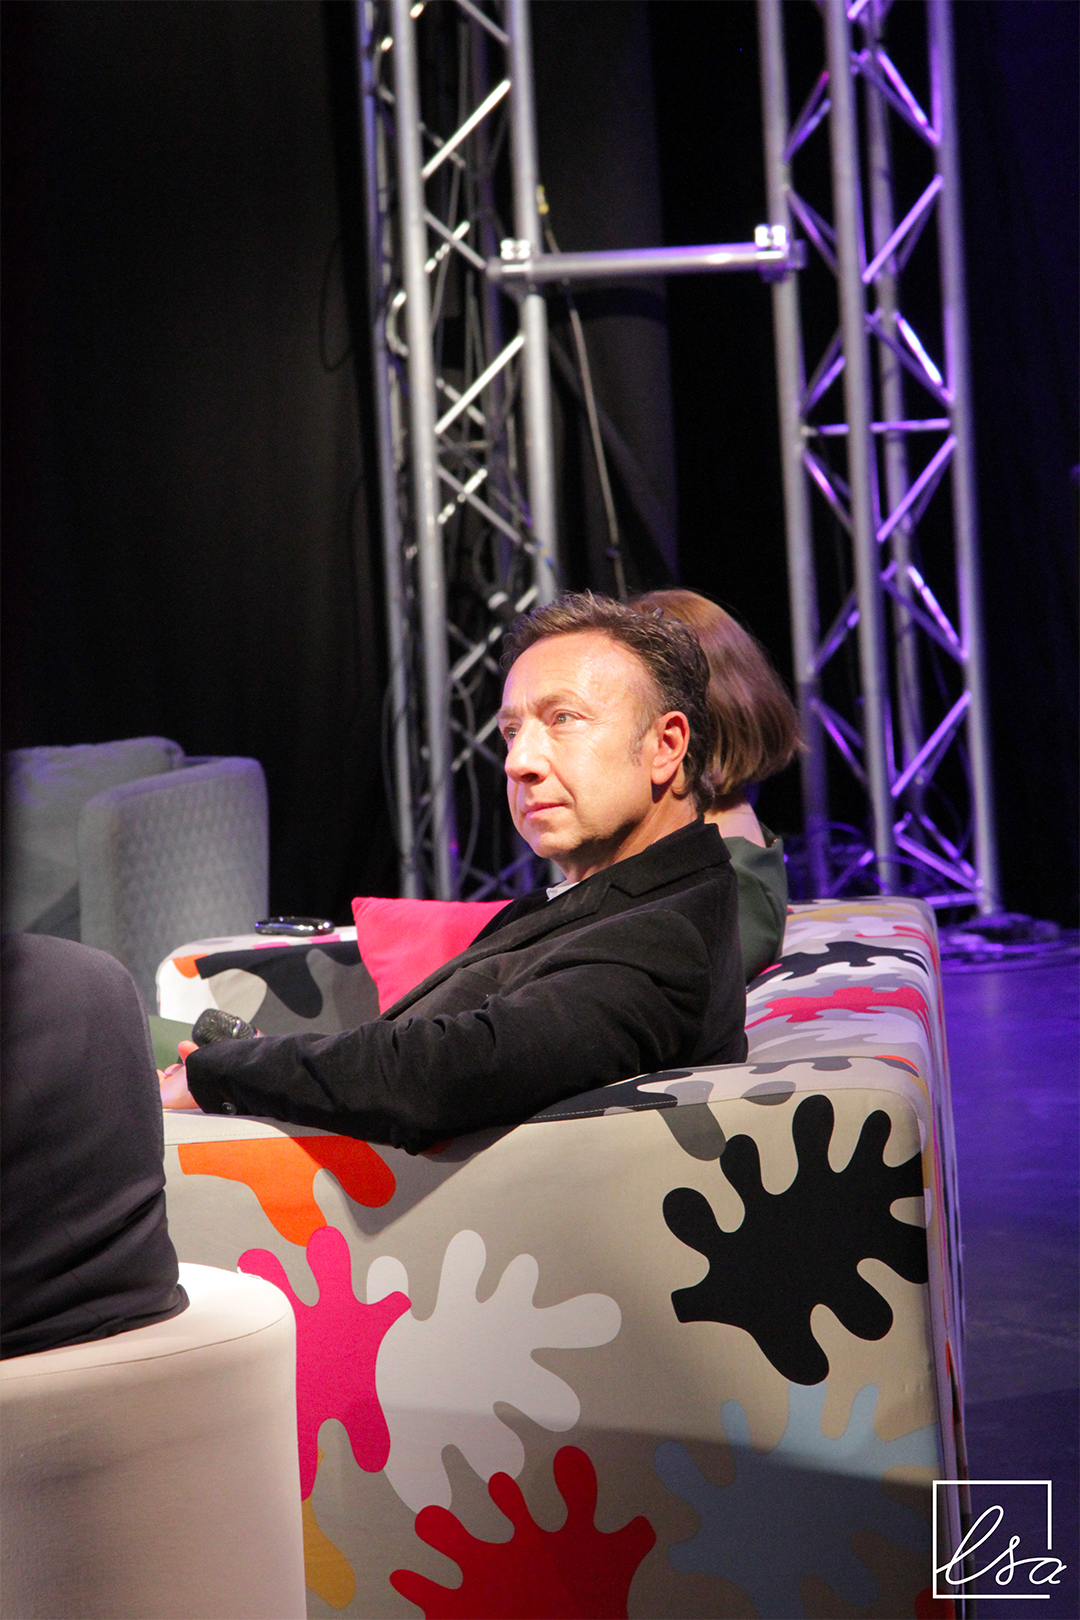 Photographie de Stéphane Bern, animateur radio et télévision, sur scène, assis sur un canapé.